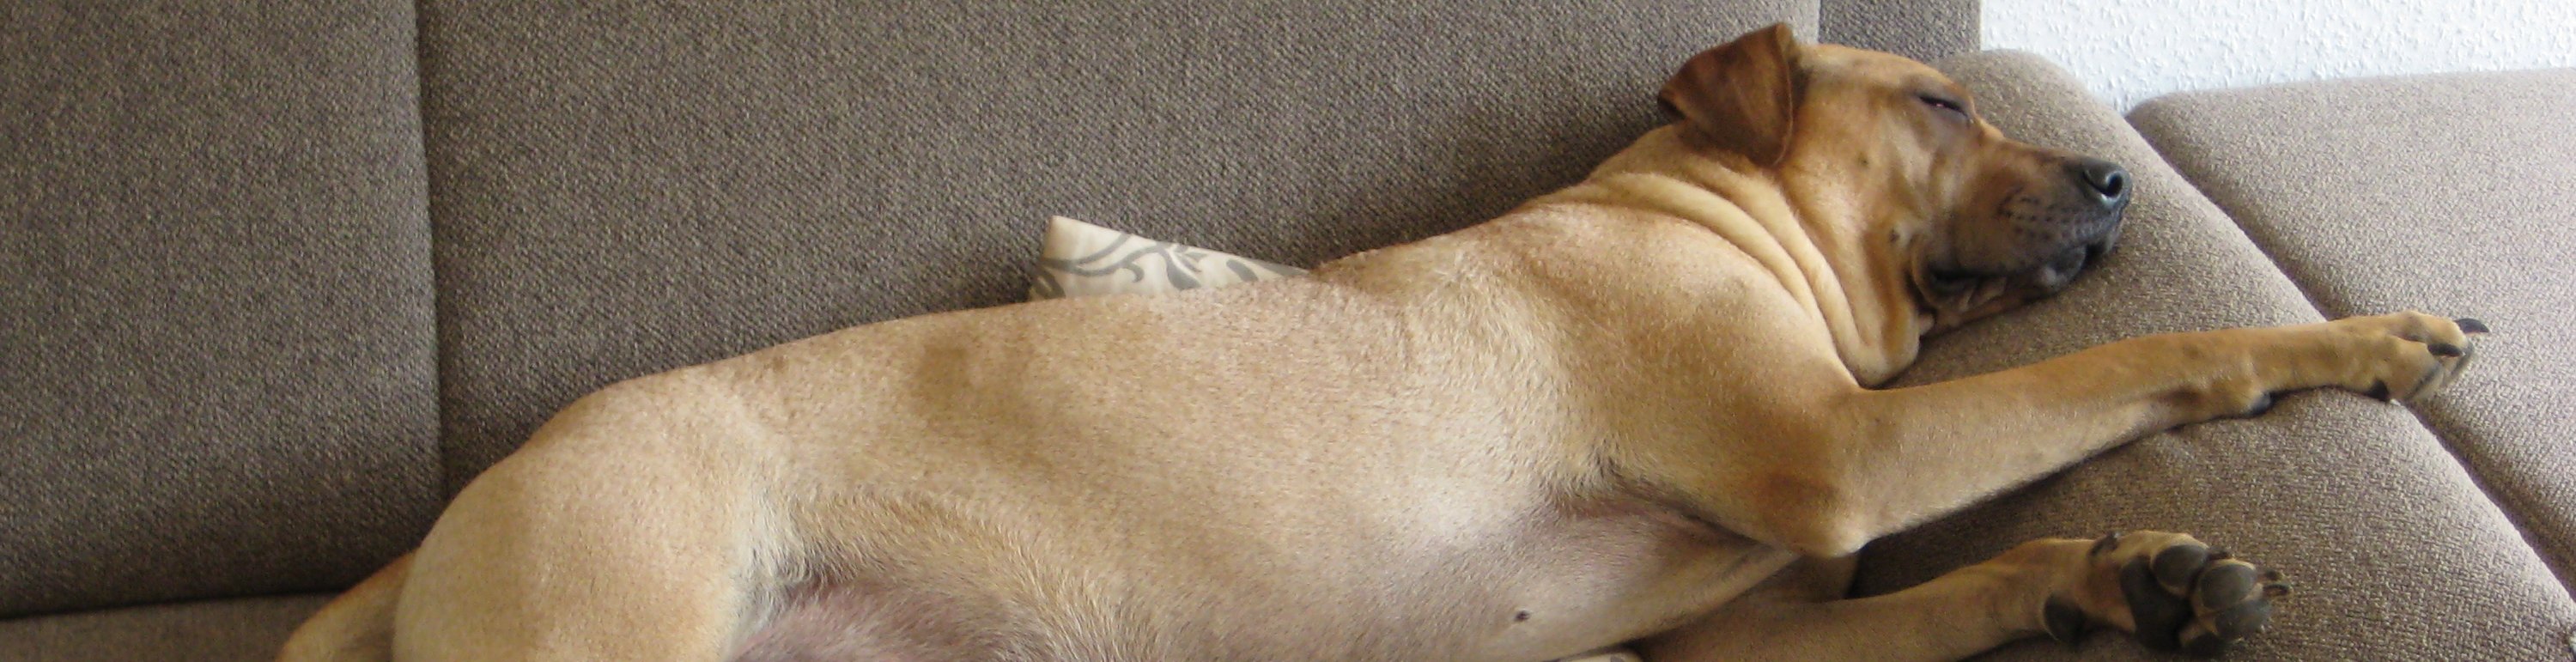 Ein Hund liegt langgestreckt auf der Couch